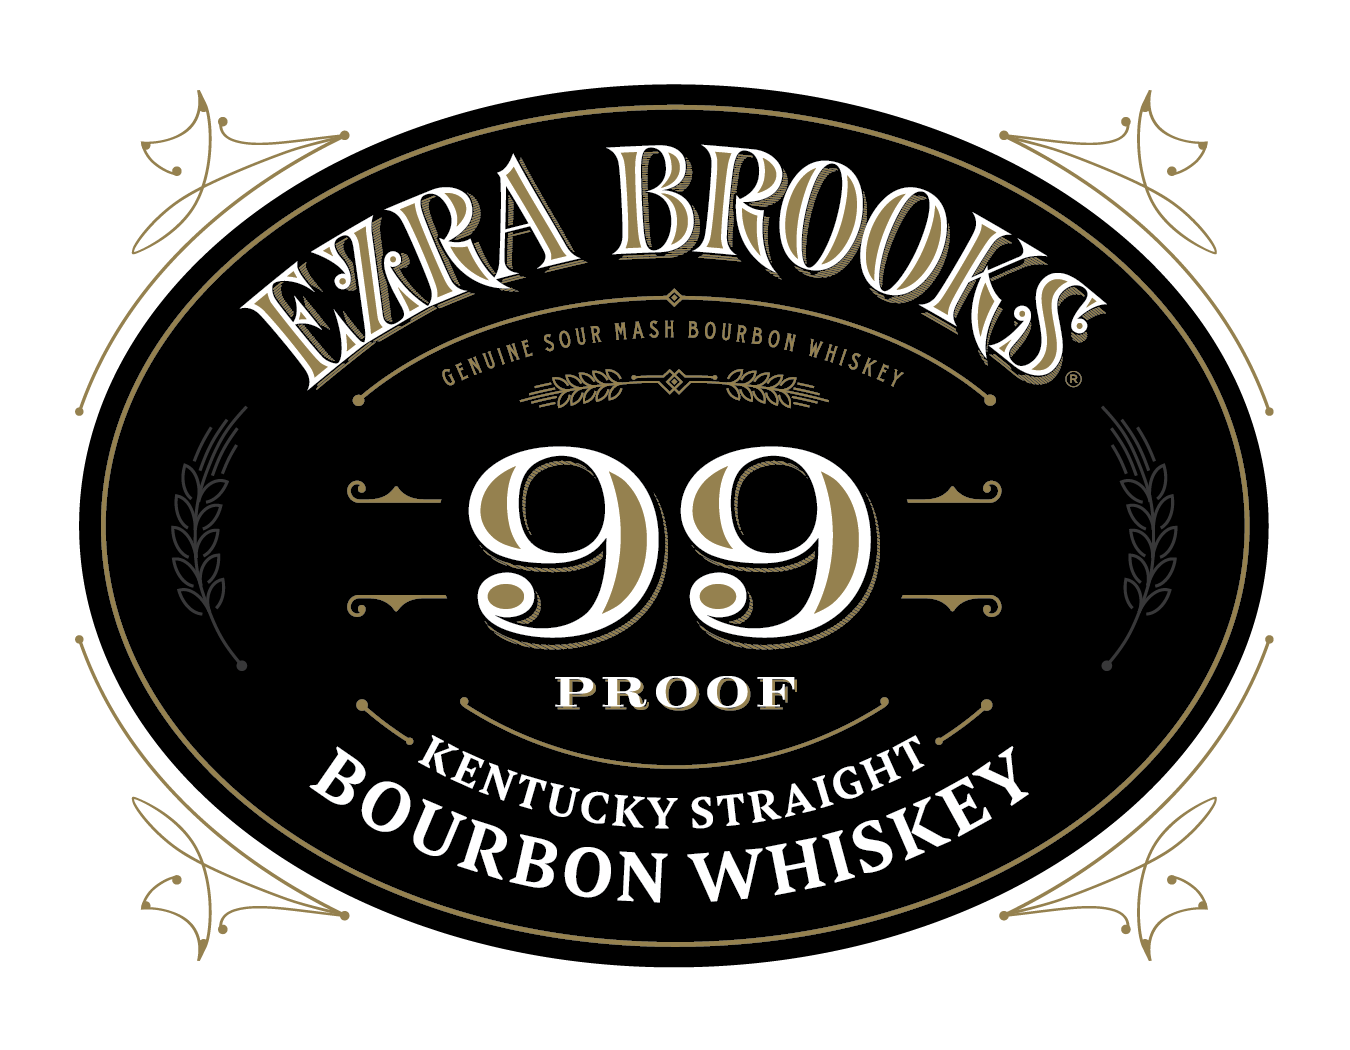 Ezra Brooks